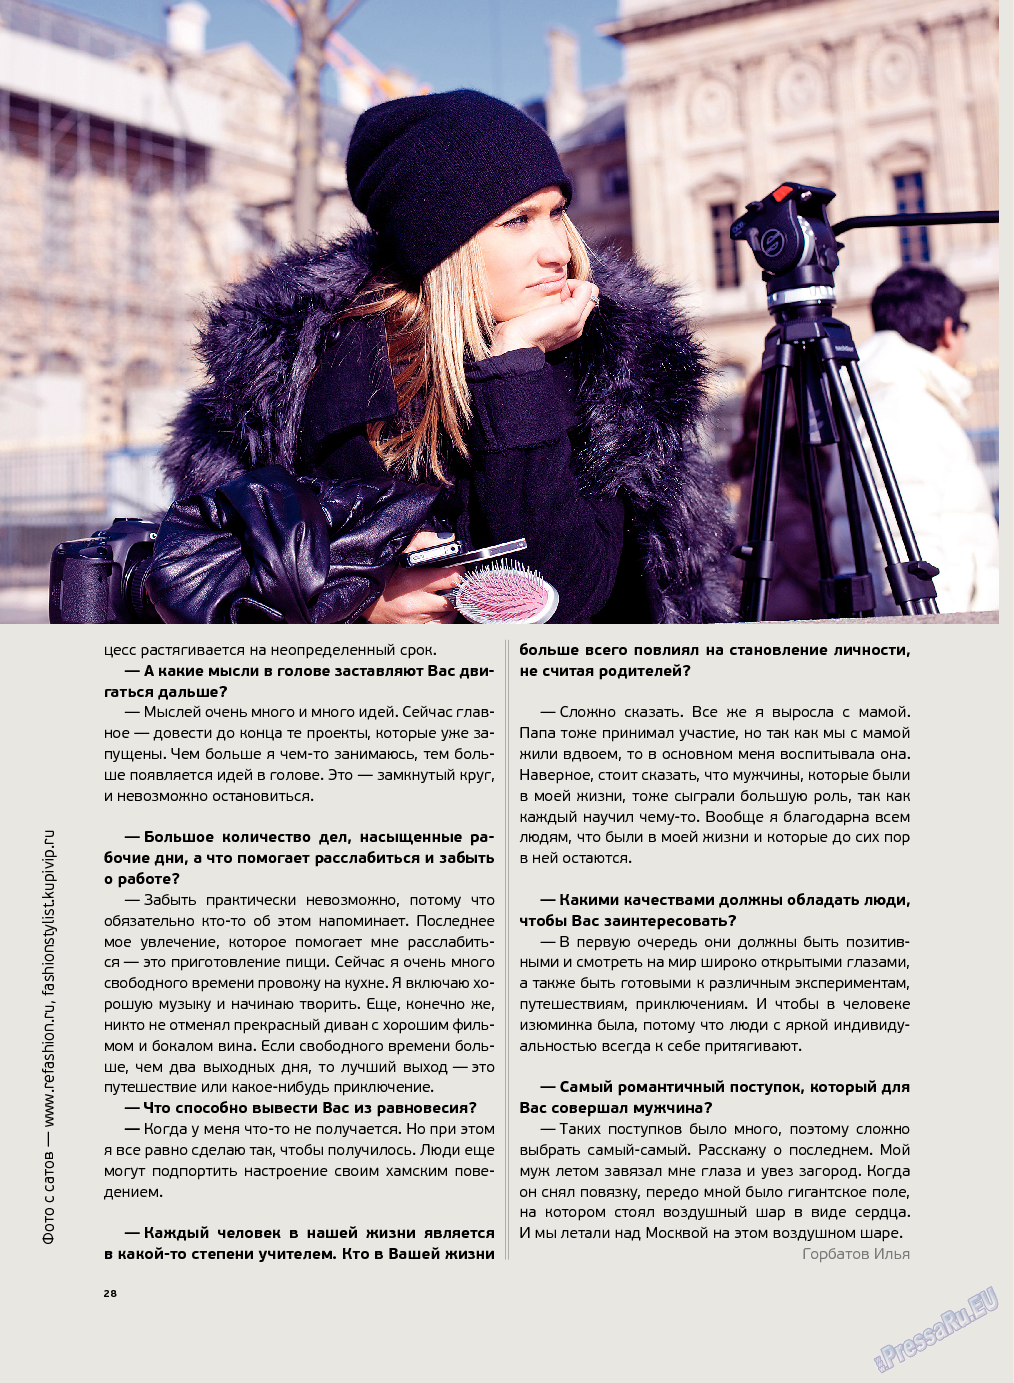 Артек, журнал. 2013 №4 стр.30